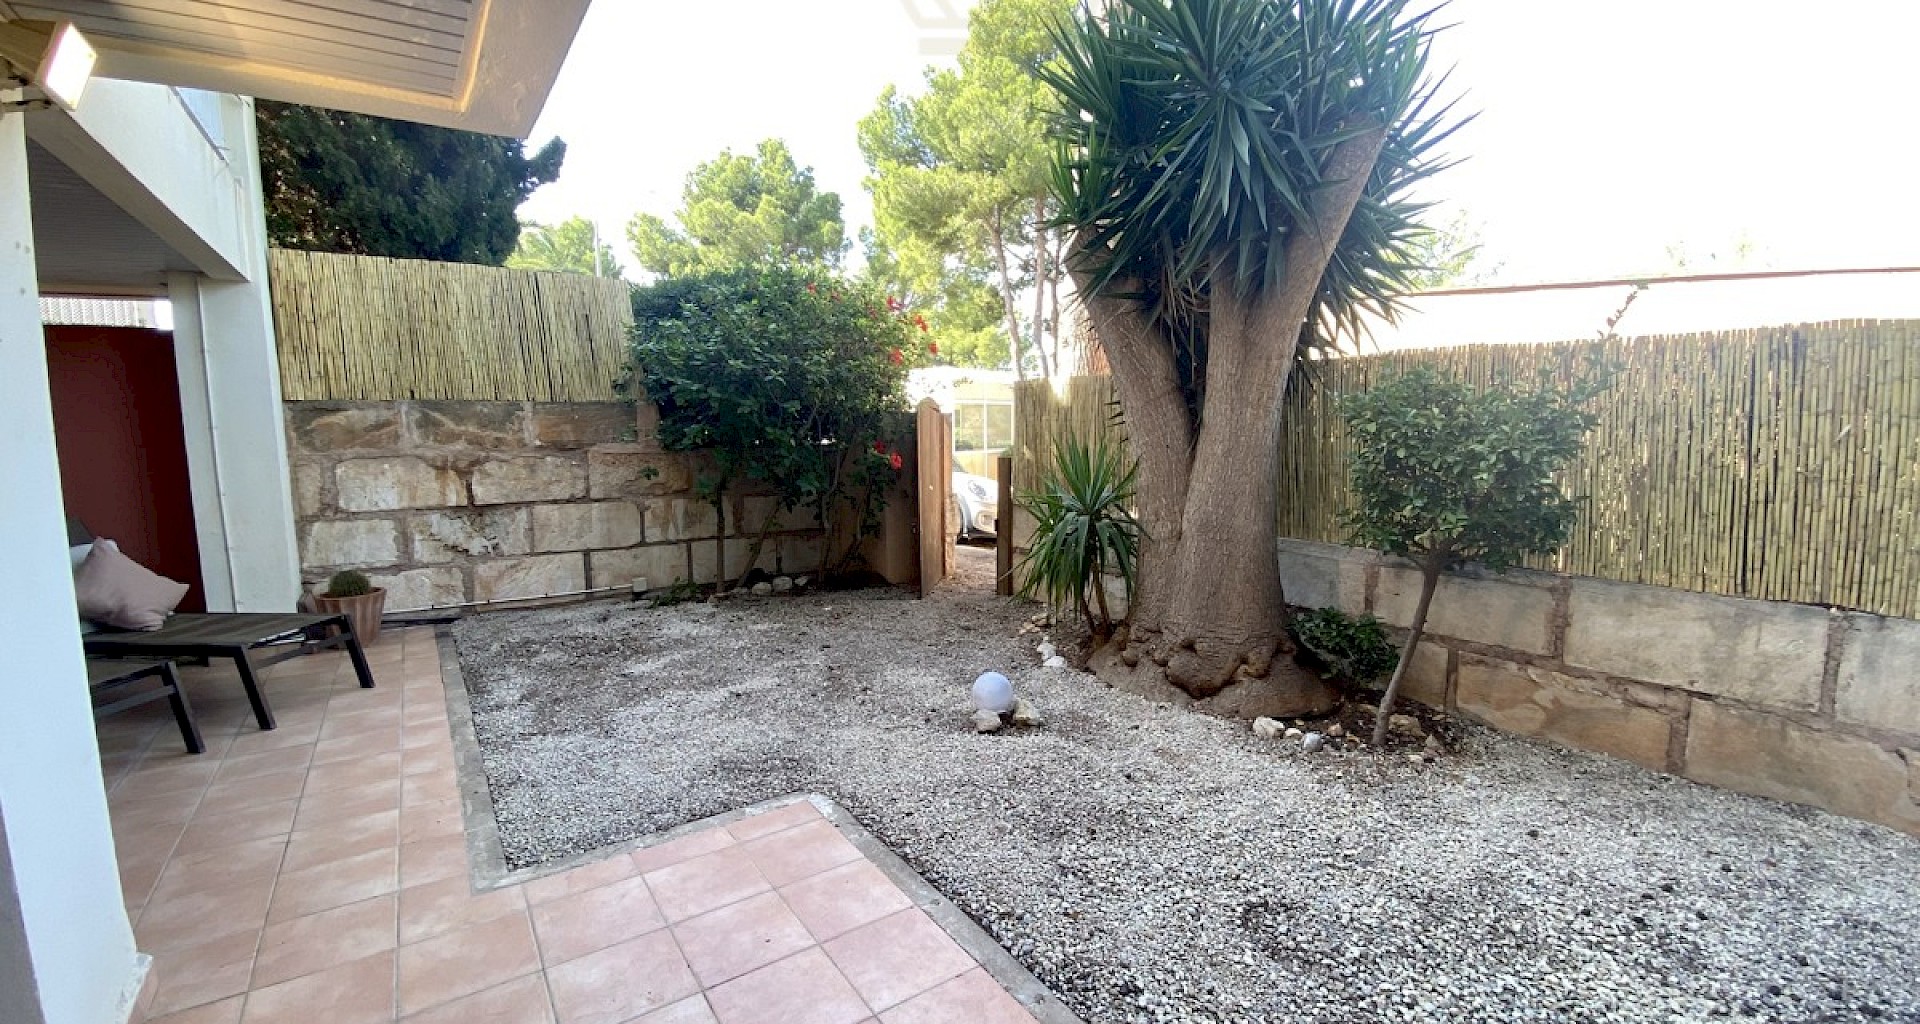 KROHN & LUEDEMANN Spacious well-kept garden apartment in Bendinat near golf course for sale IMG_7145